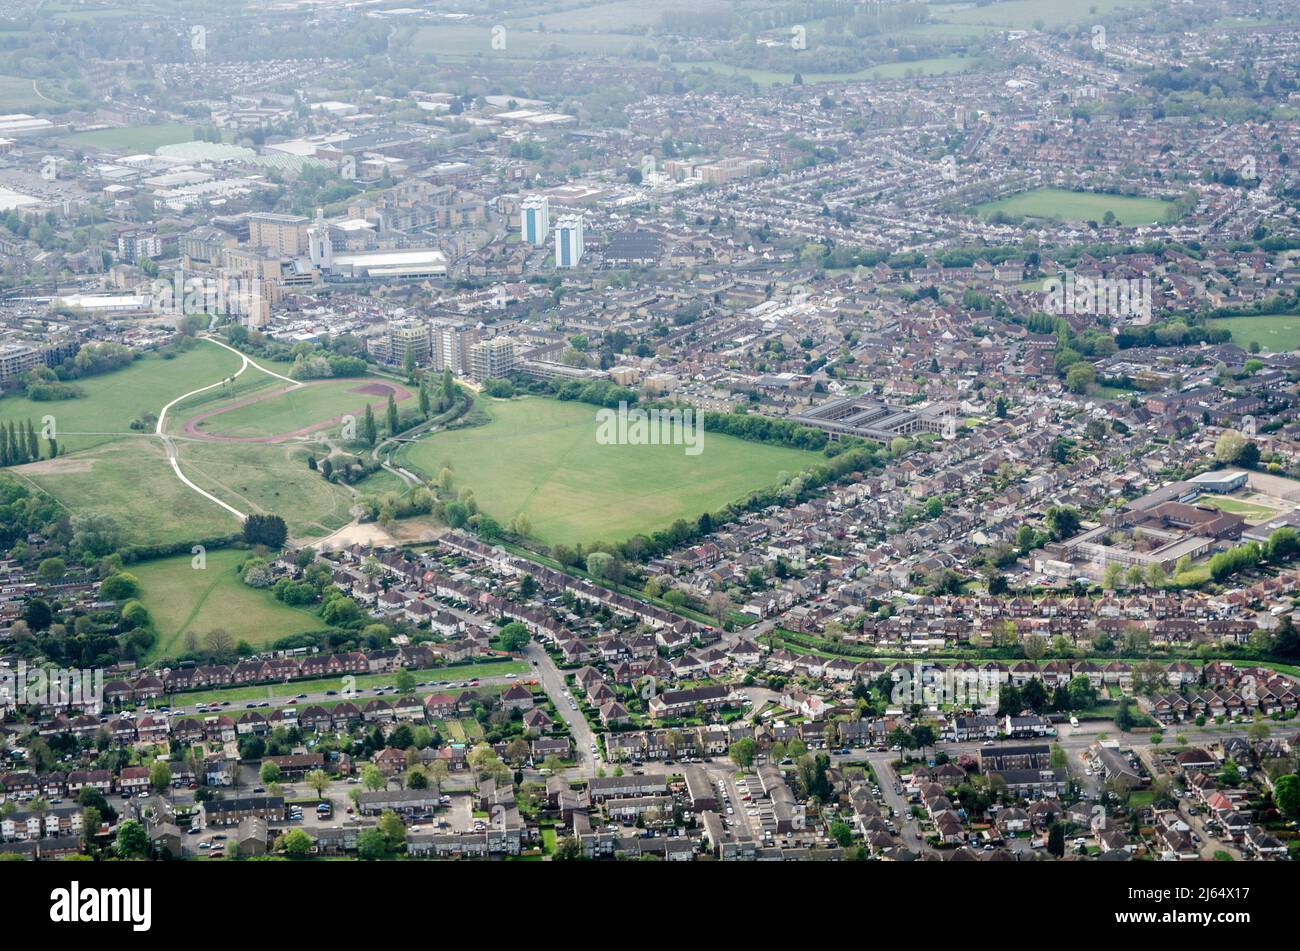 Vista aérea del distrito londinense de Hounslow con Feltham Running Track en el medio de la imagen. También podrá ver el parque Blenheim y los ríos A. Foto de stock